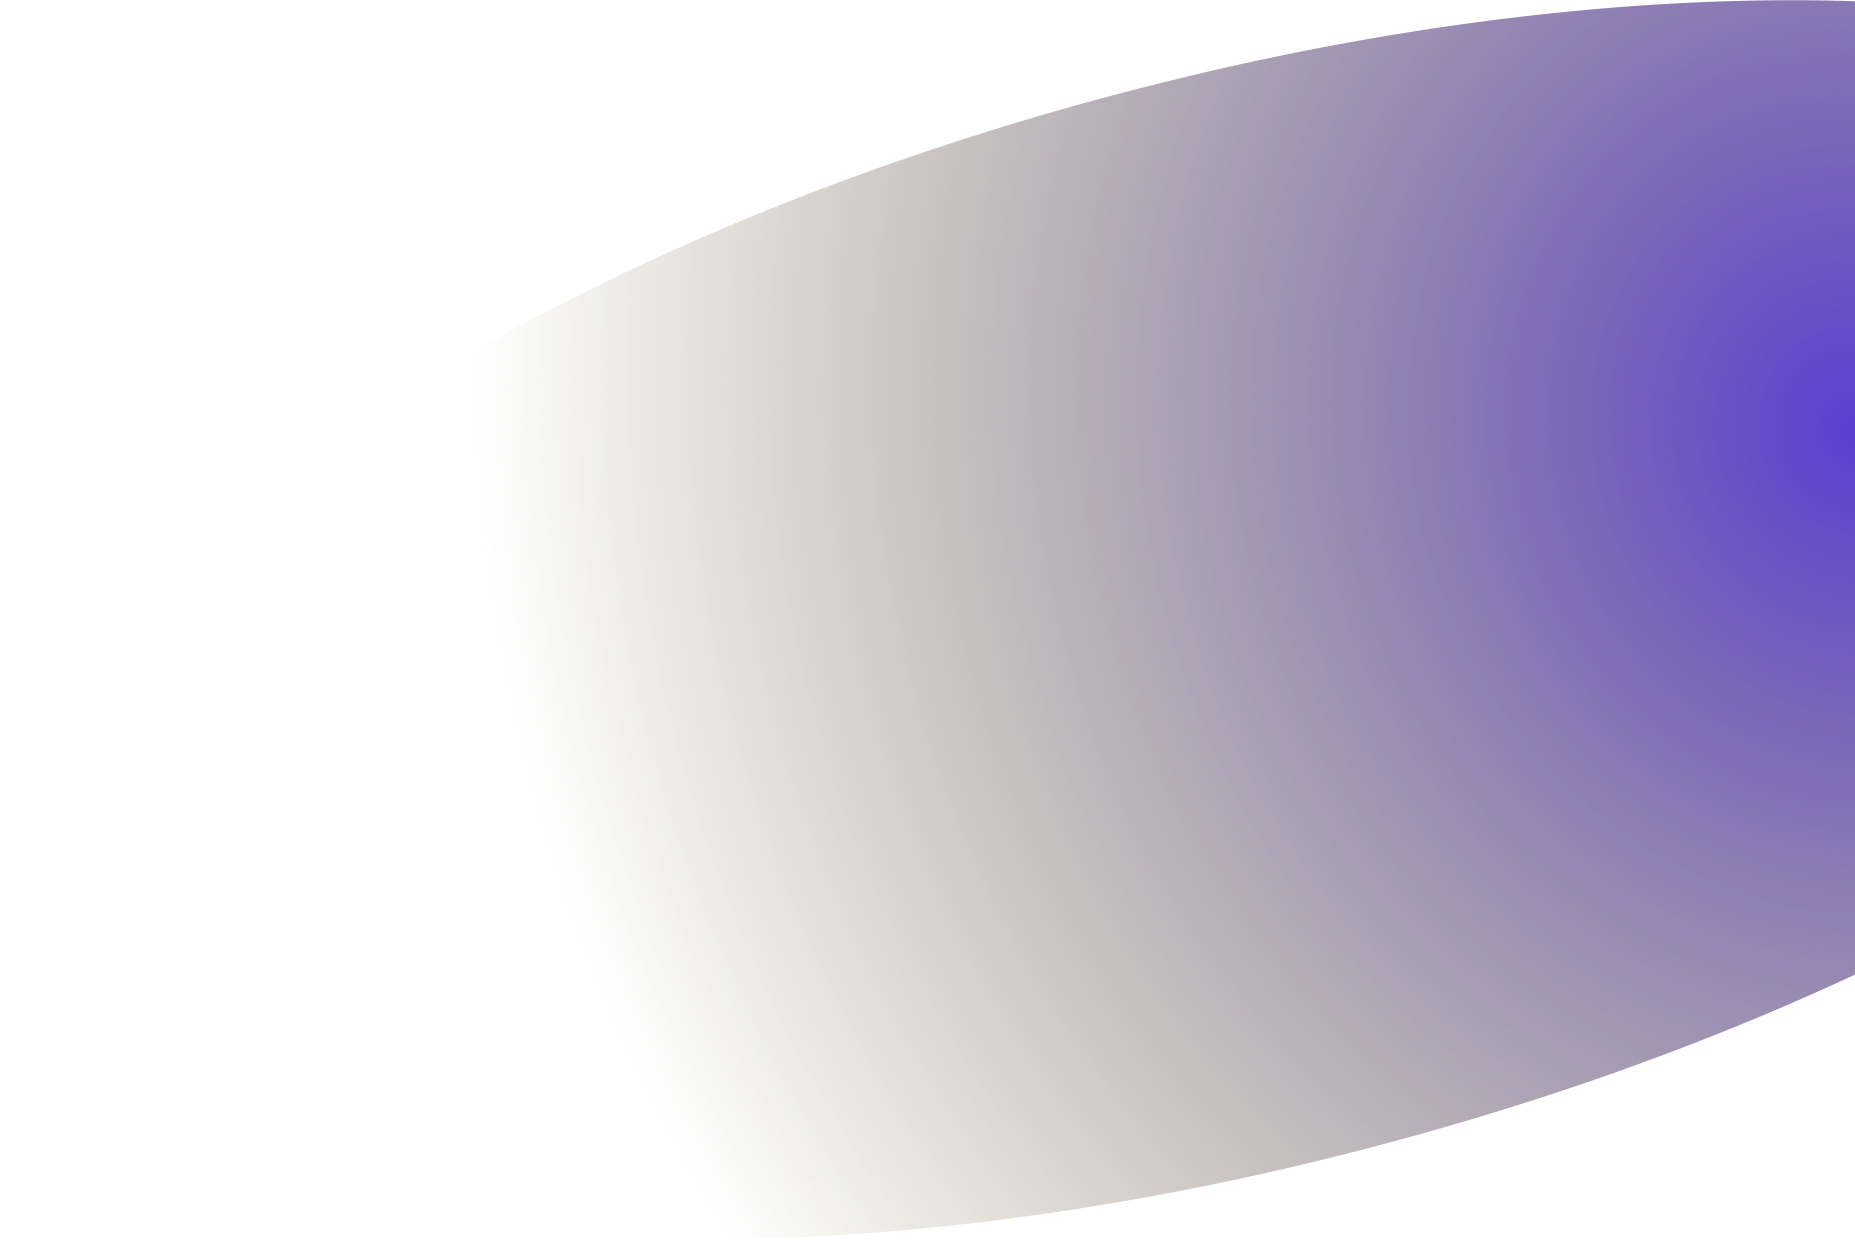 Big violet ellipse